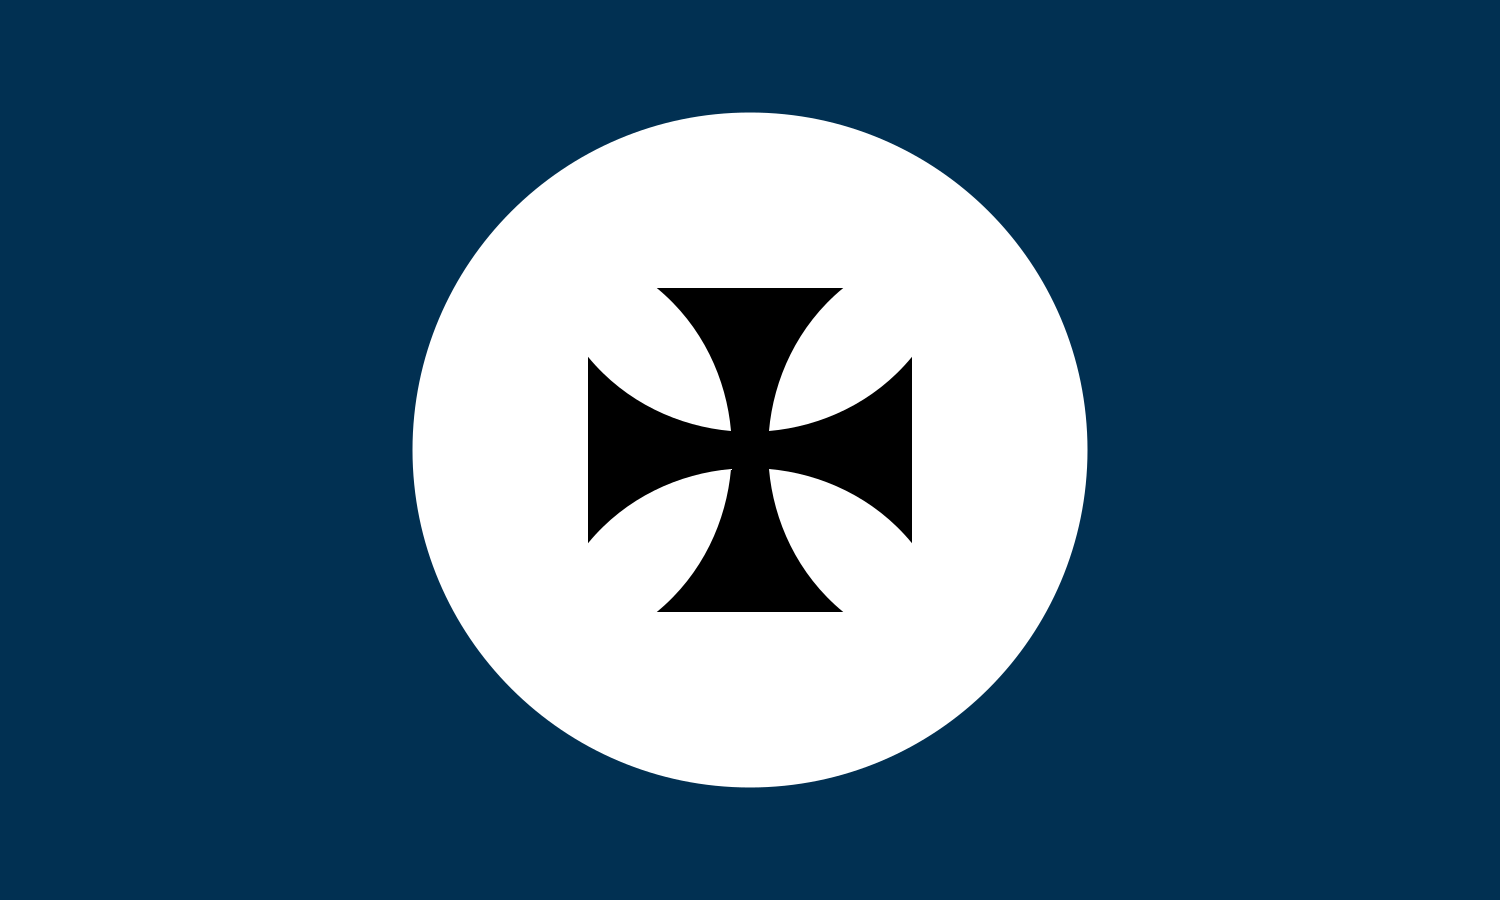 Flag of Pottsylvania (KaiserIOT 2)